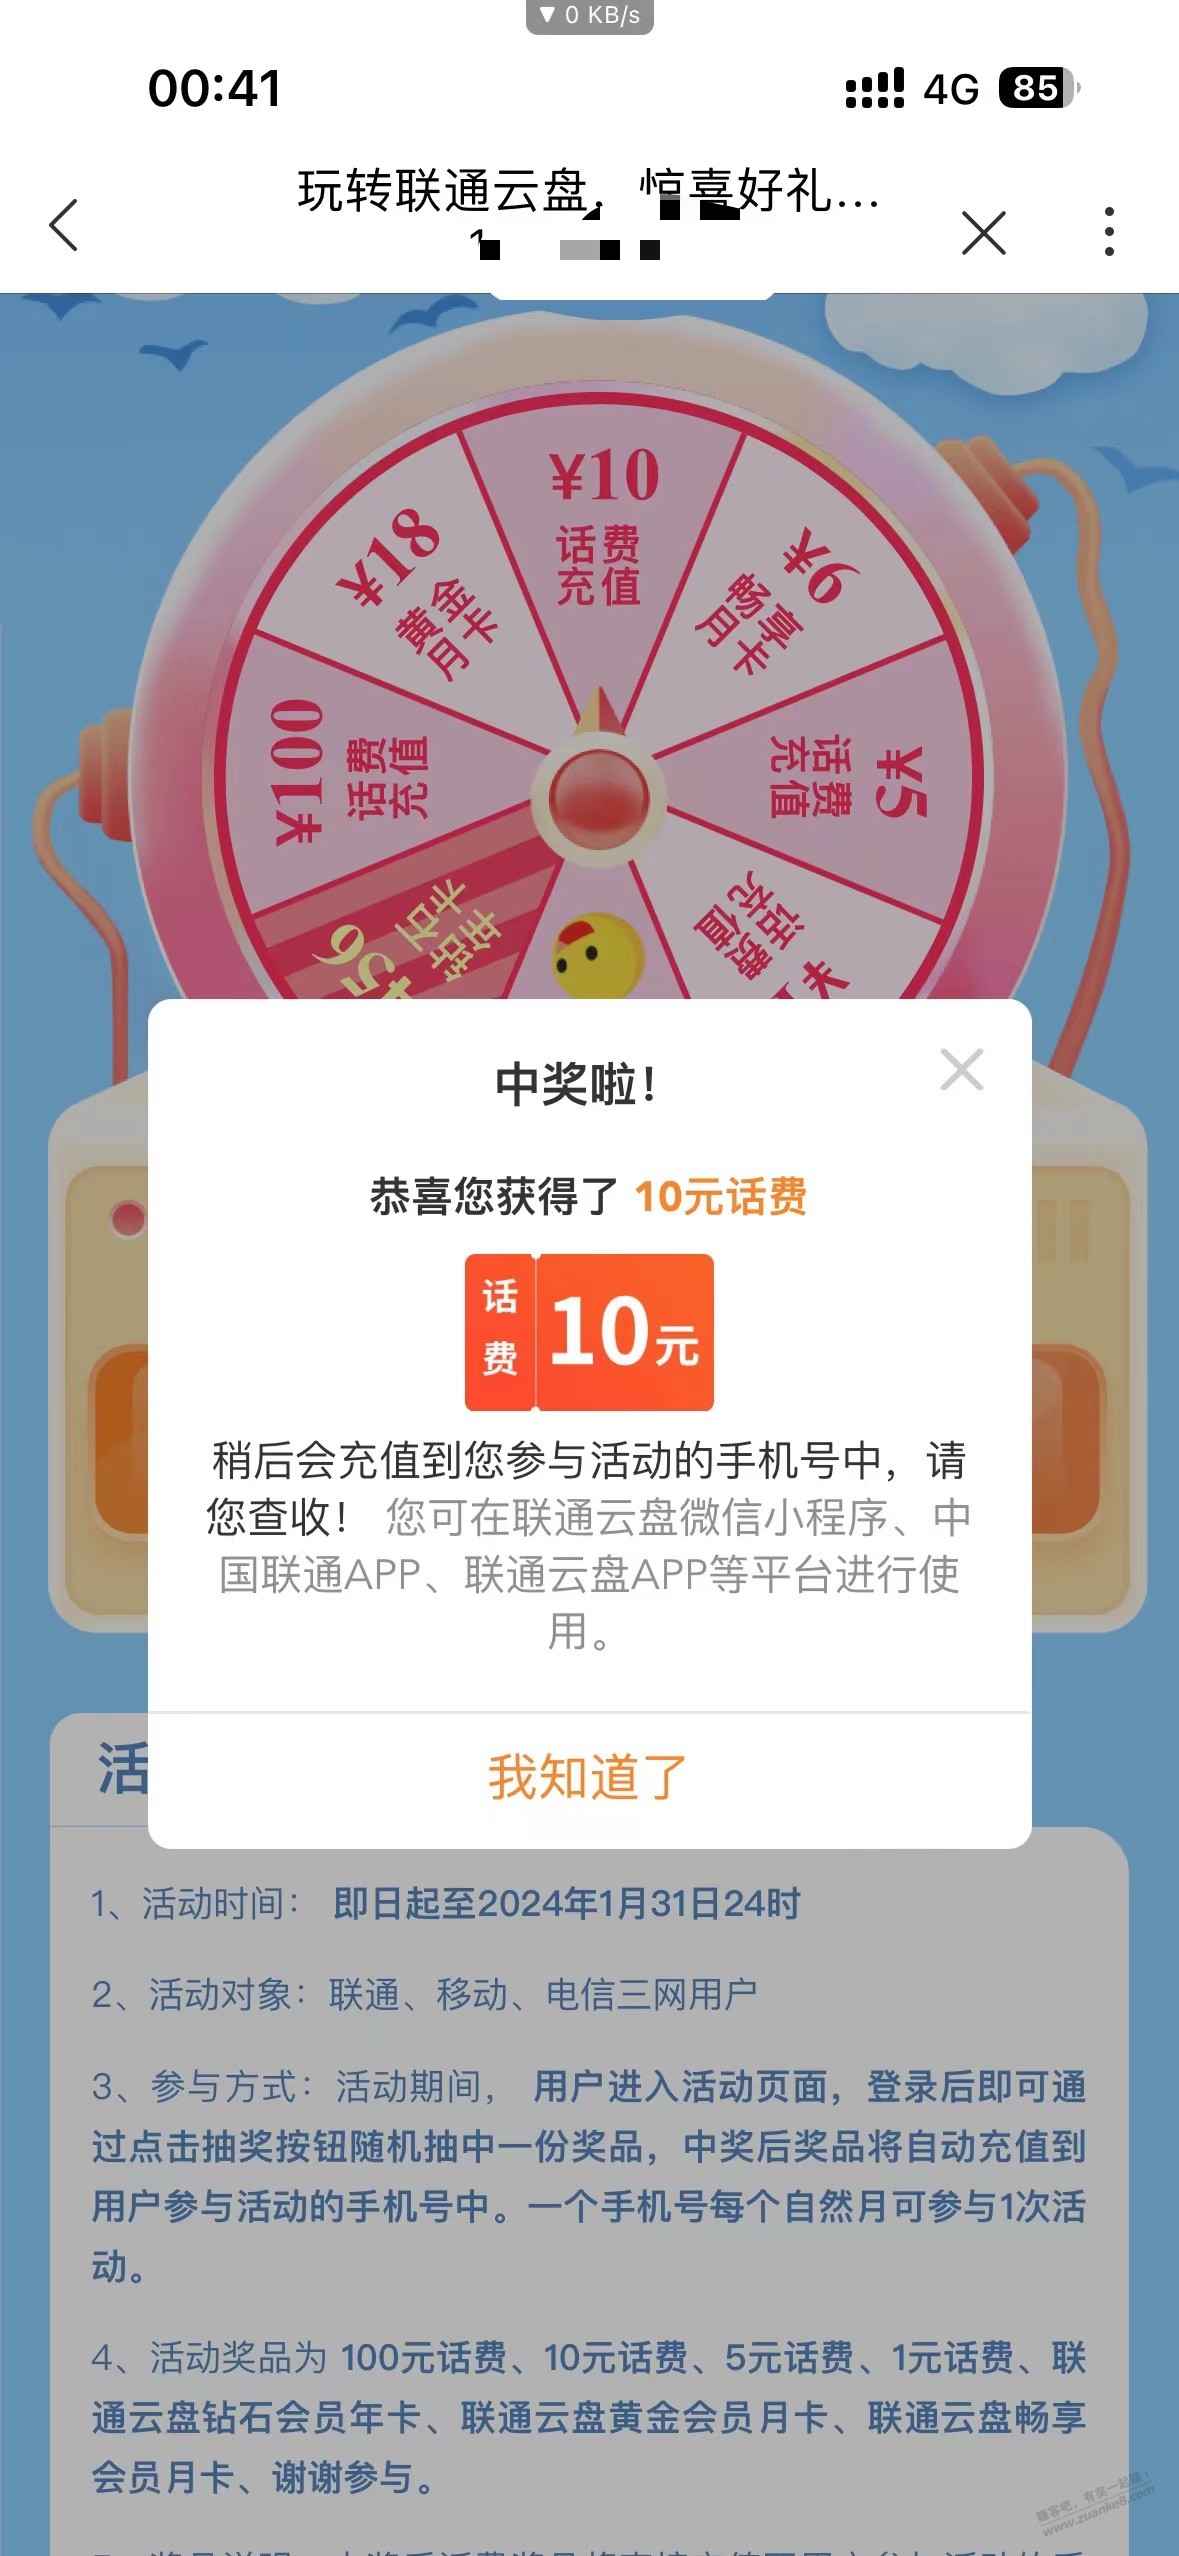 中国联通云盘抽奖有水-惠小助(52huixz.com)